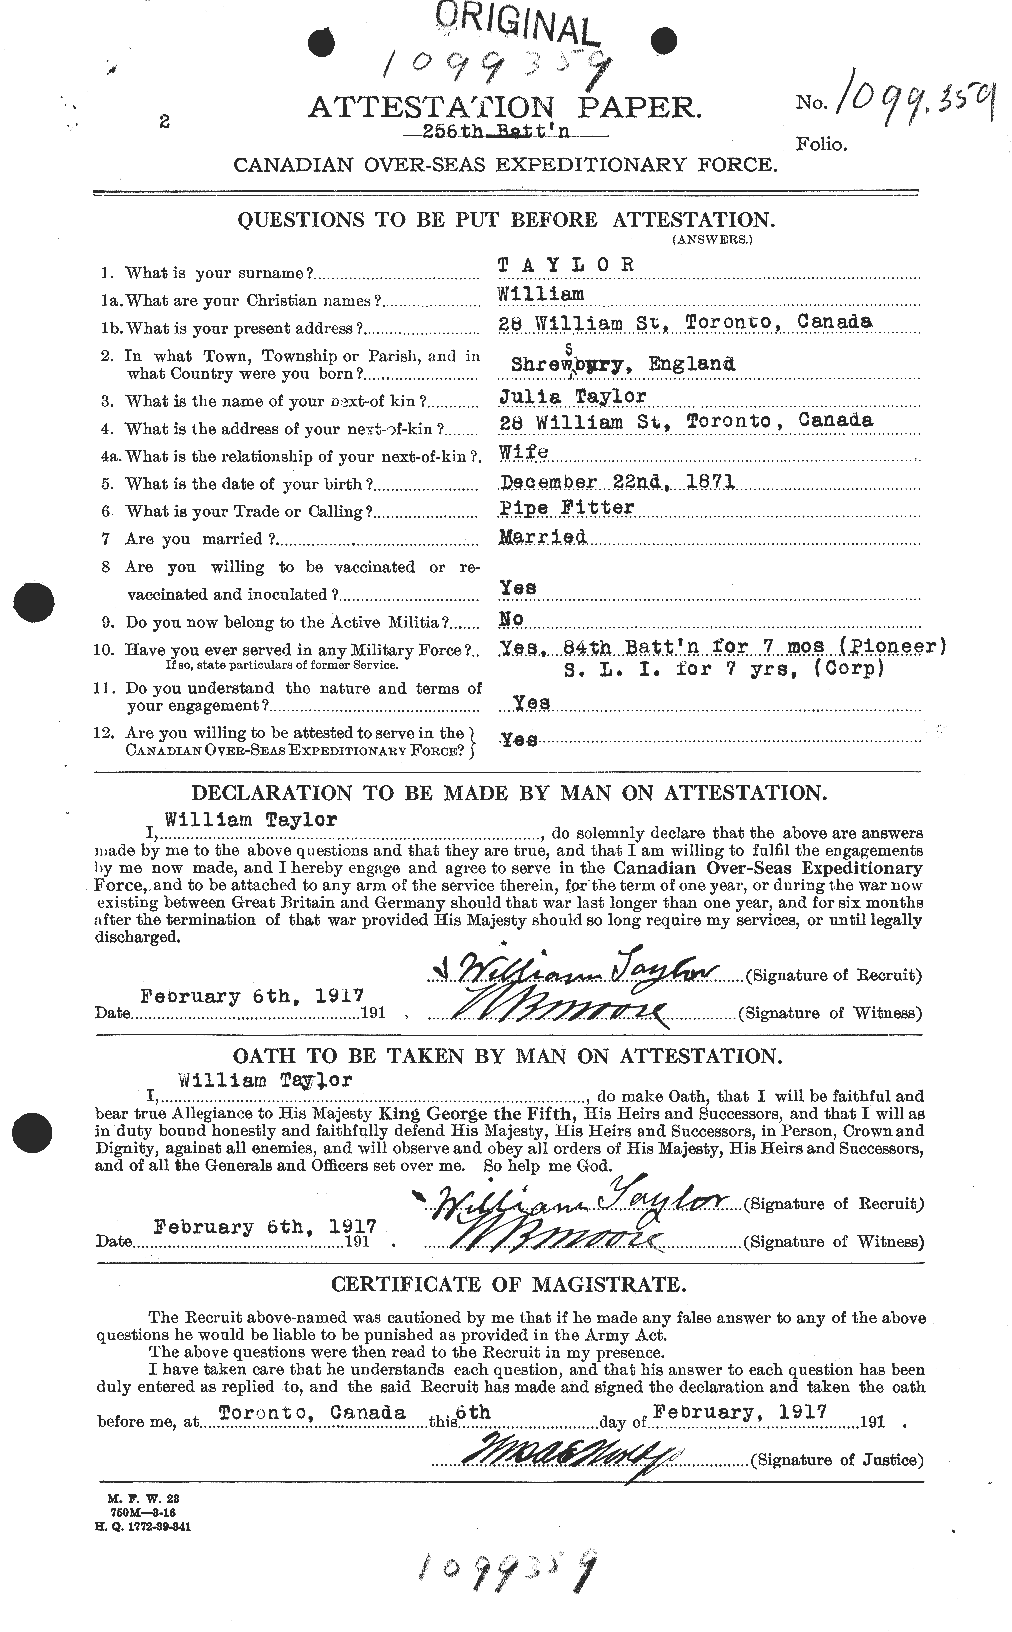 Dossiers du Personnel de la Première Guerre mondiale - CEC 628171a